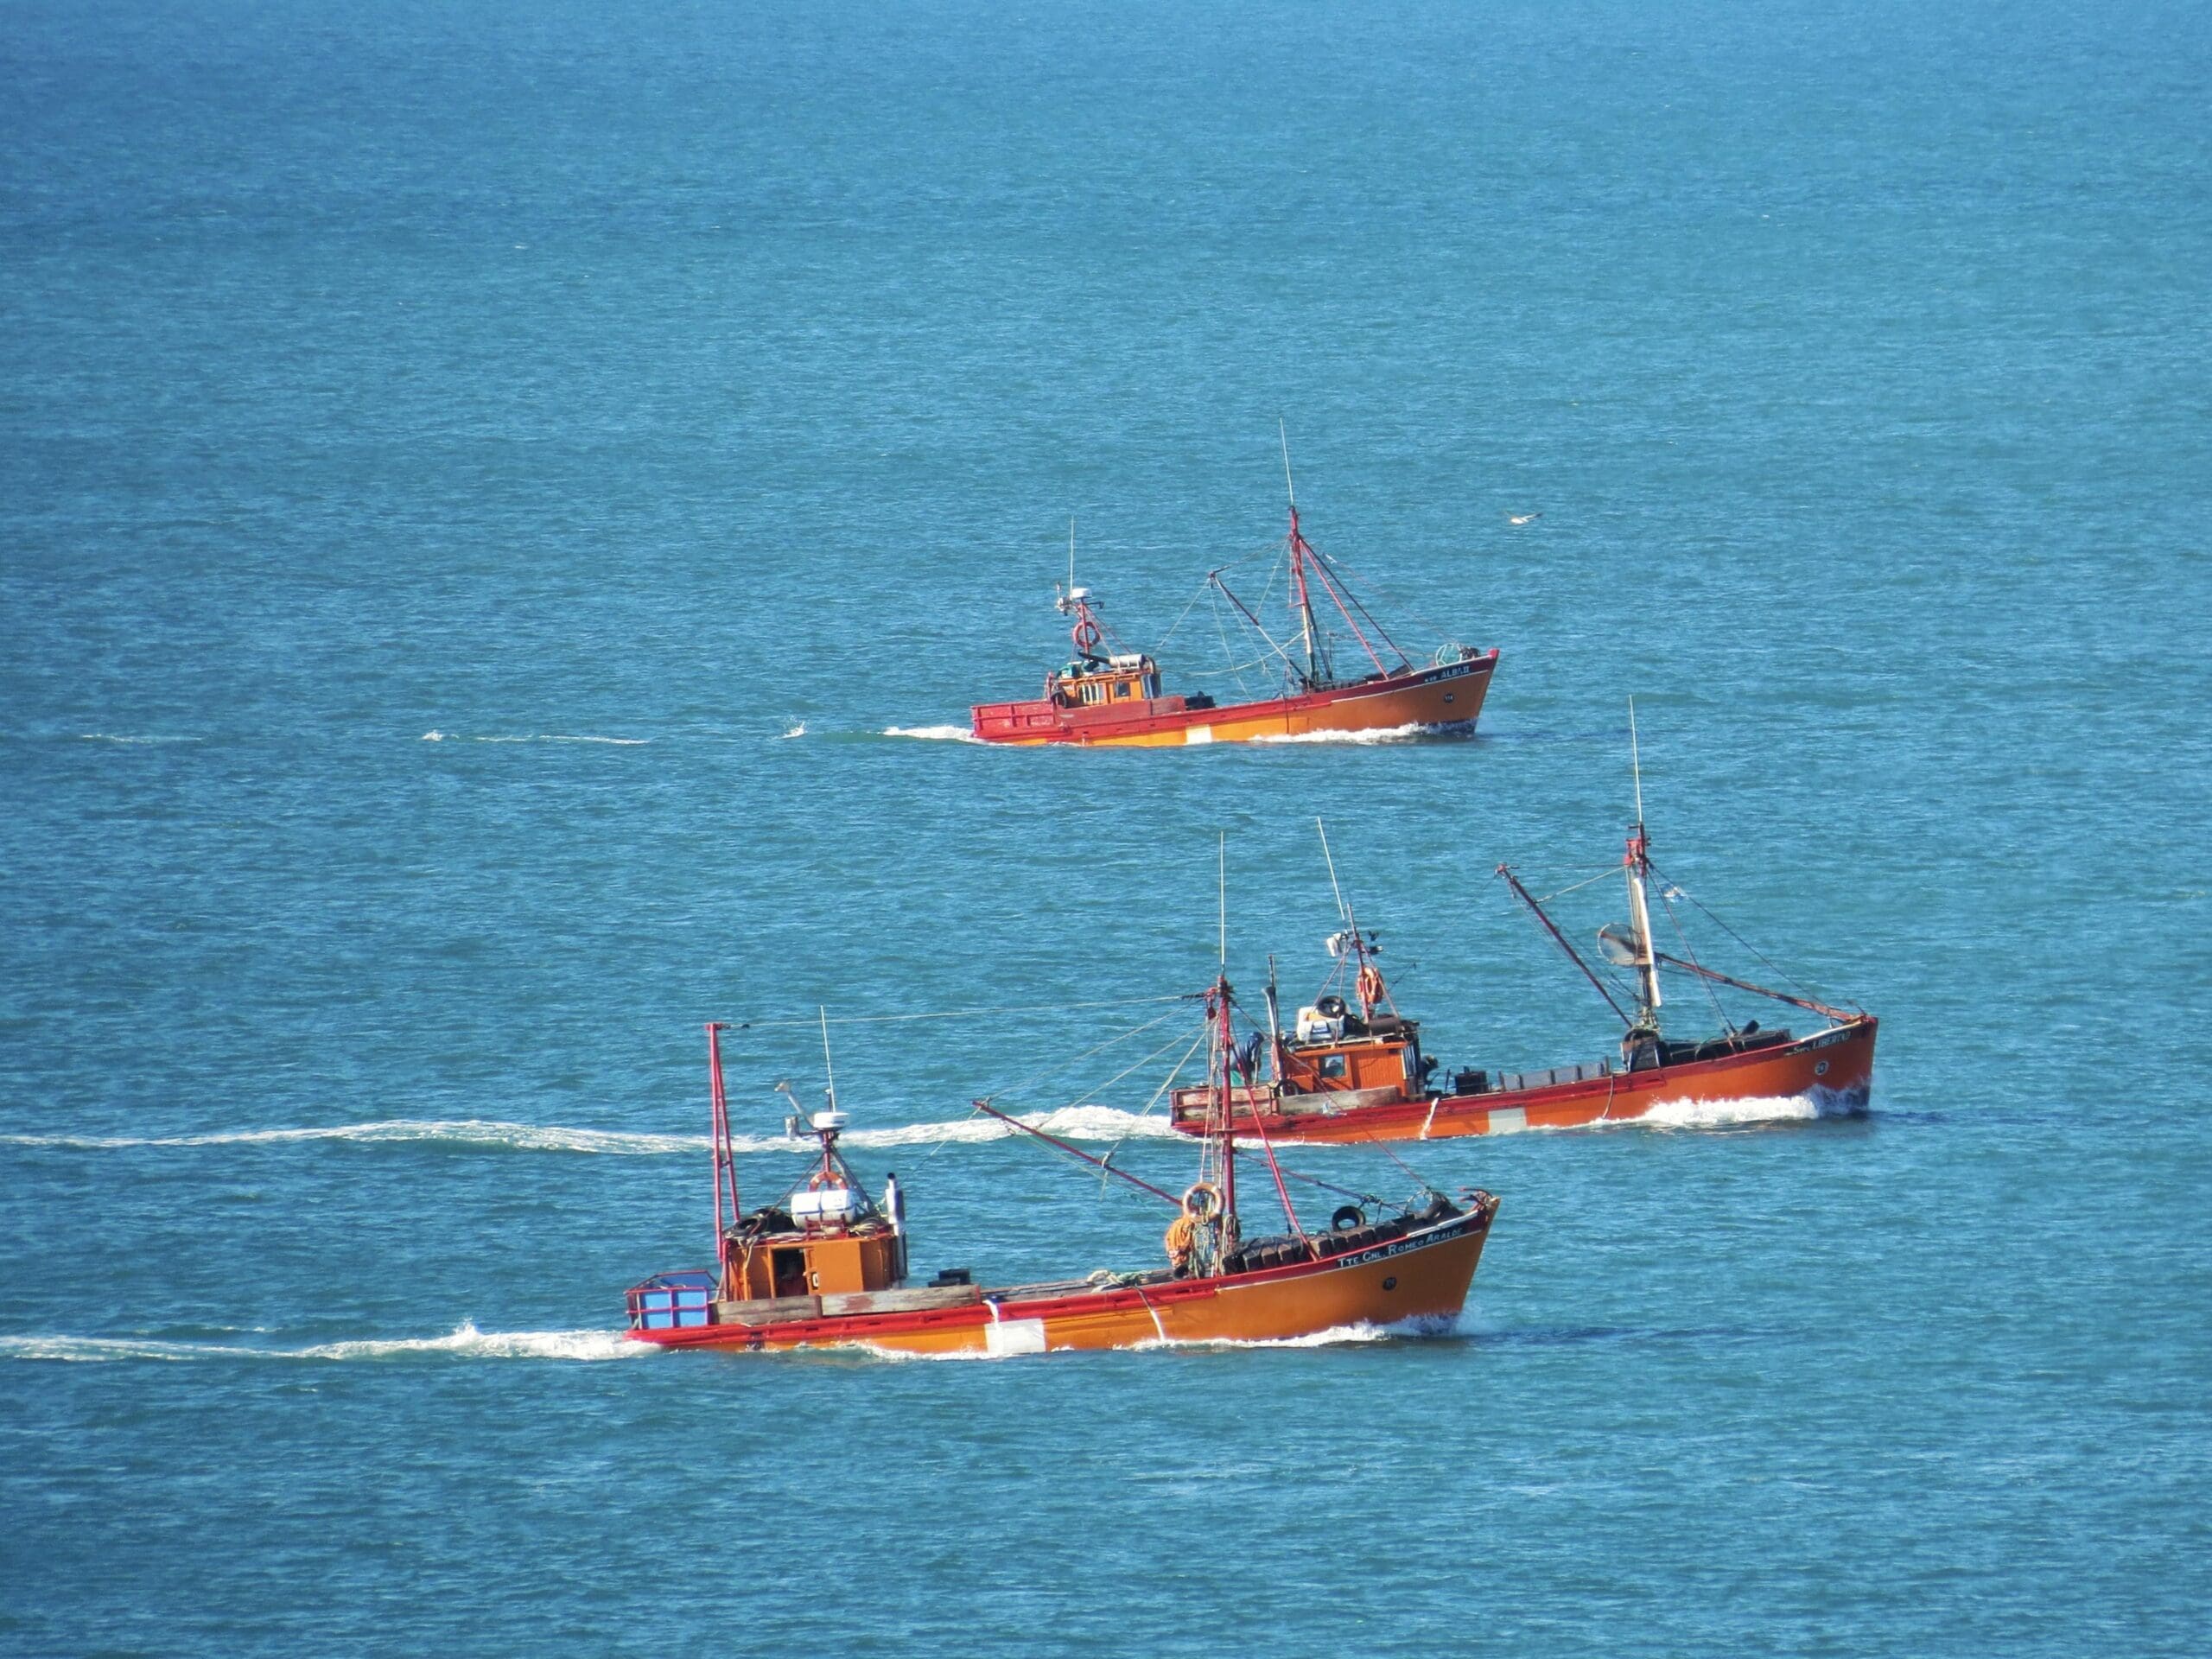 La Justicia prohíbe la pesca de arrastre en las primeras 3 millas náuticas